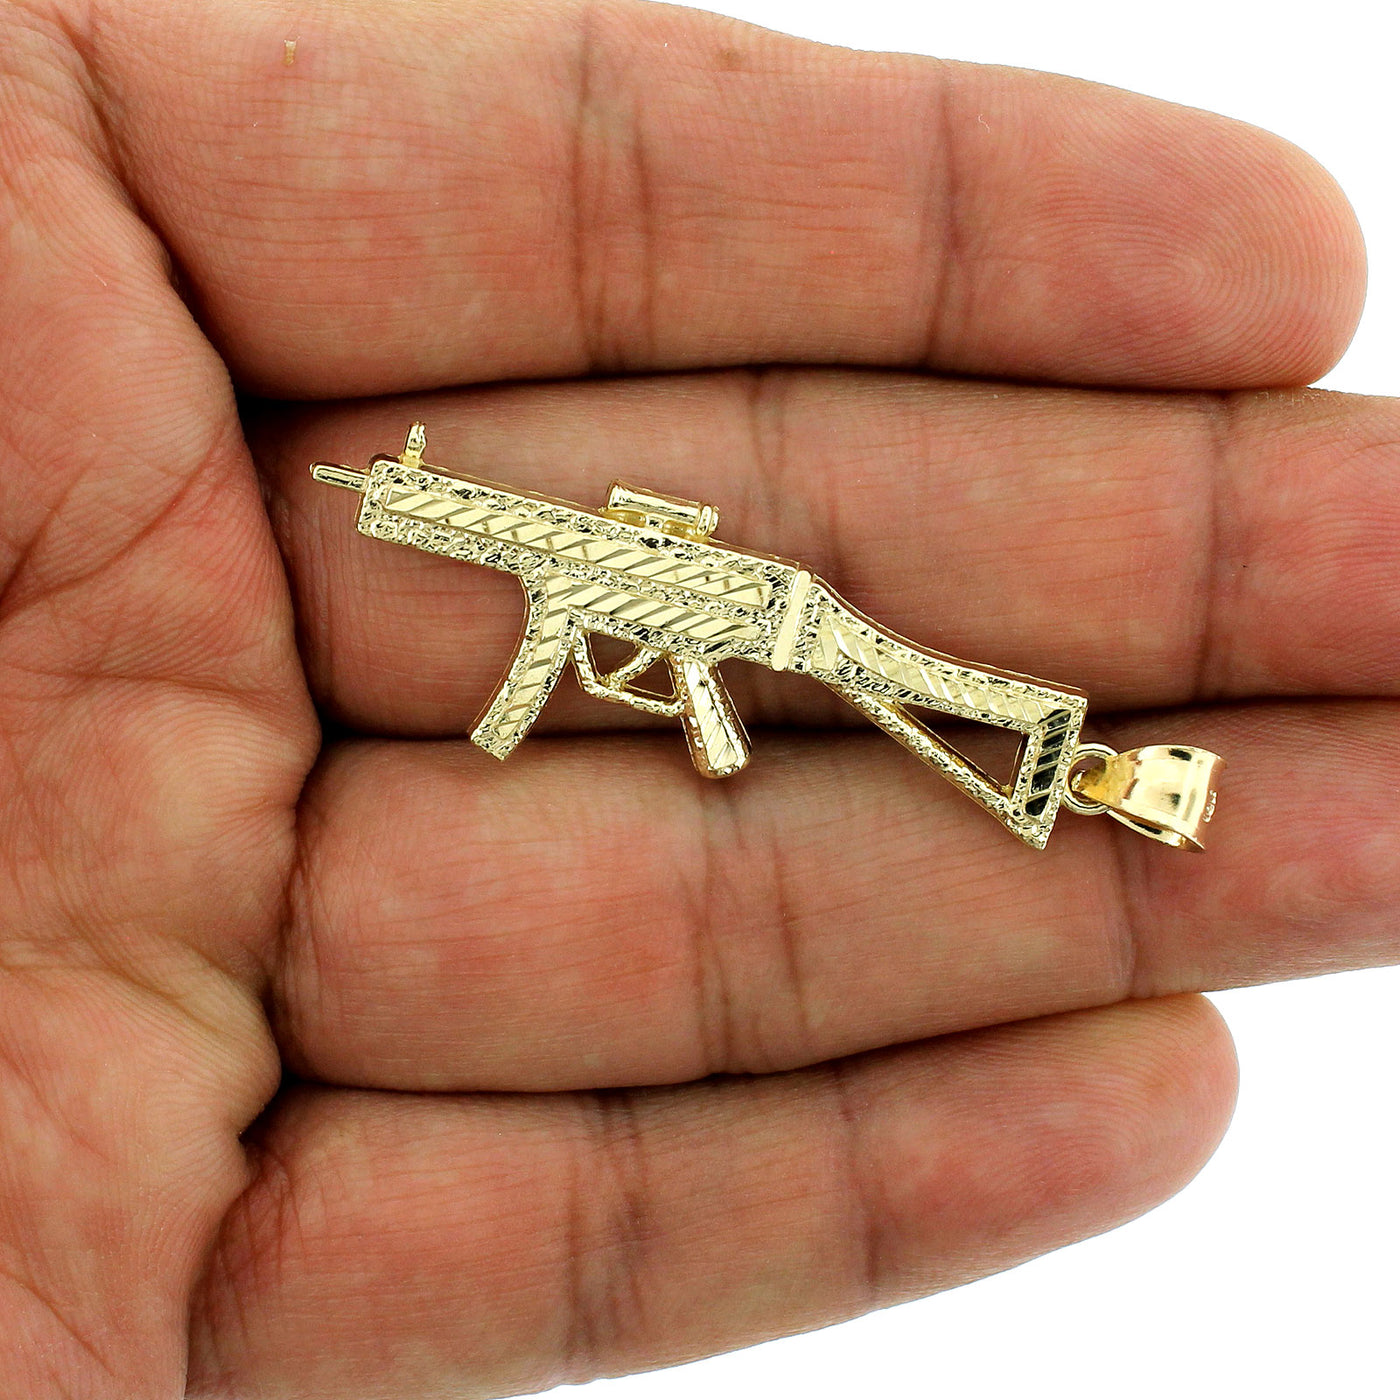 Mens 10K Yellow Gold Diamond Cut AK-47 Machine Gun Pendant, 10KT Real Gold Rifle